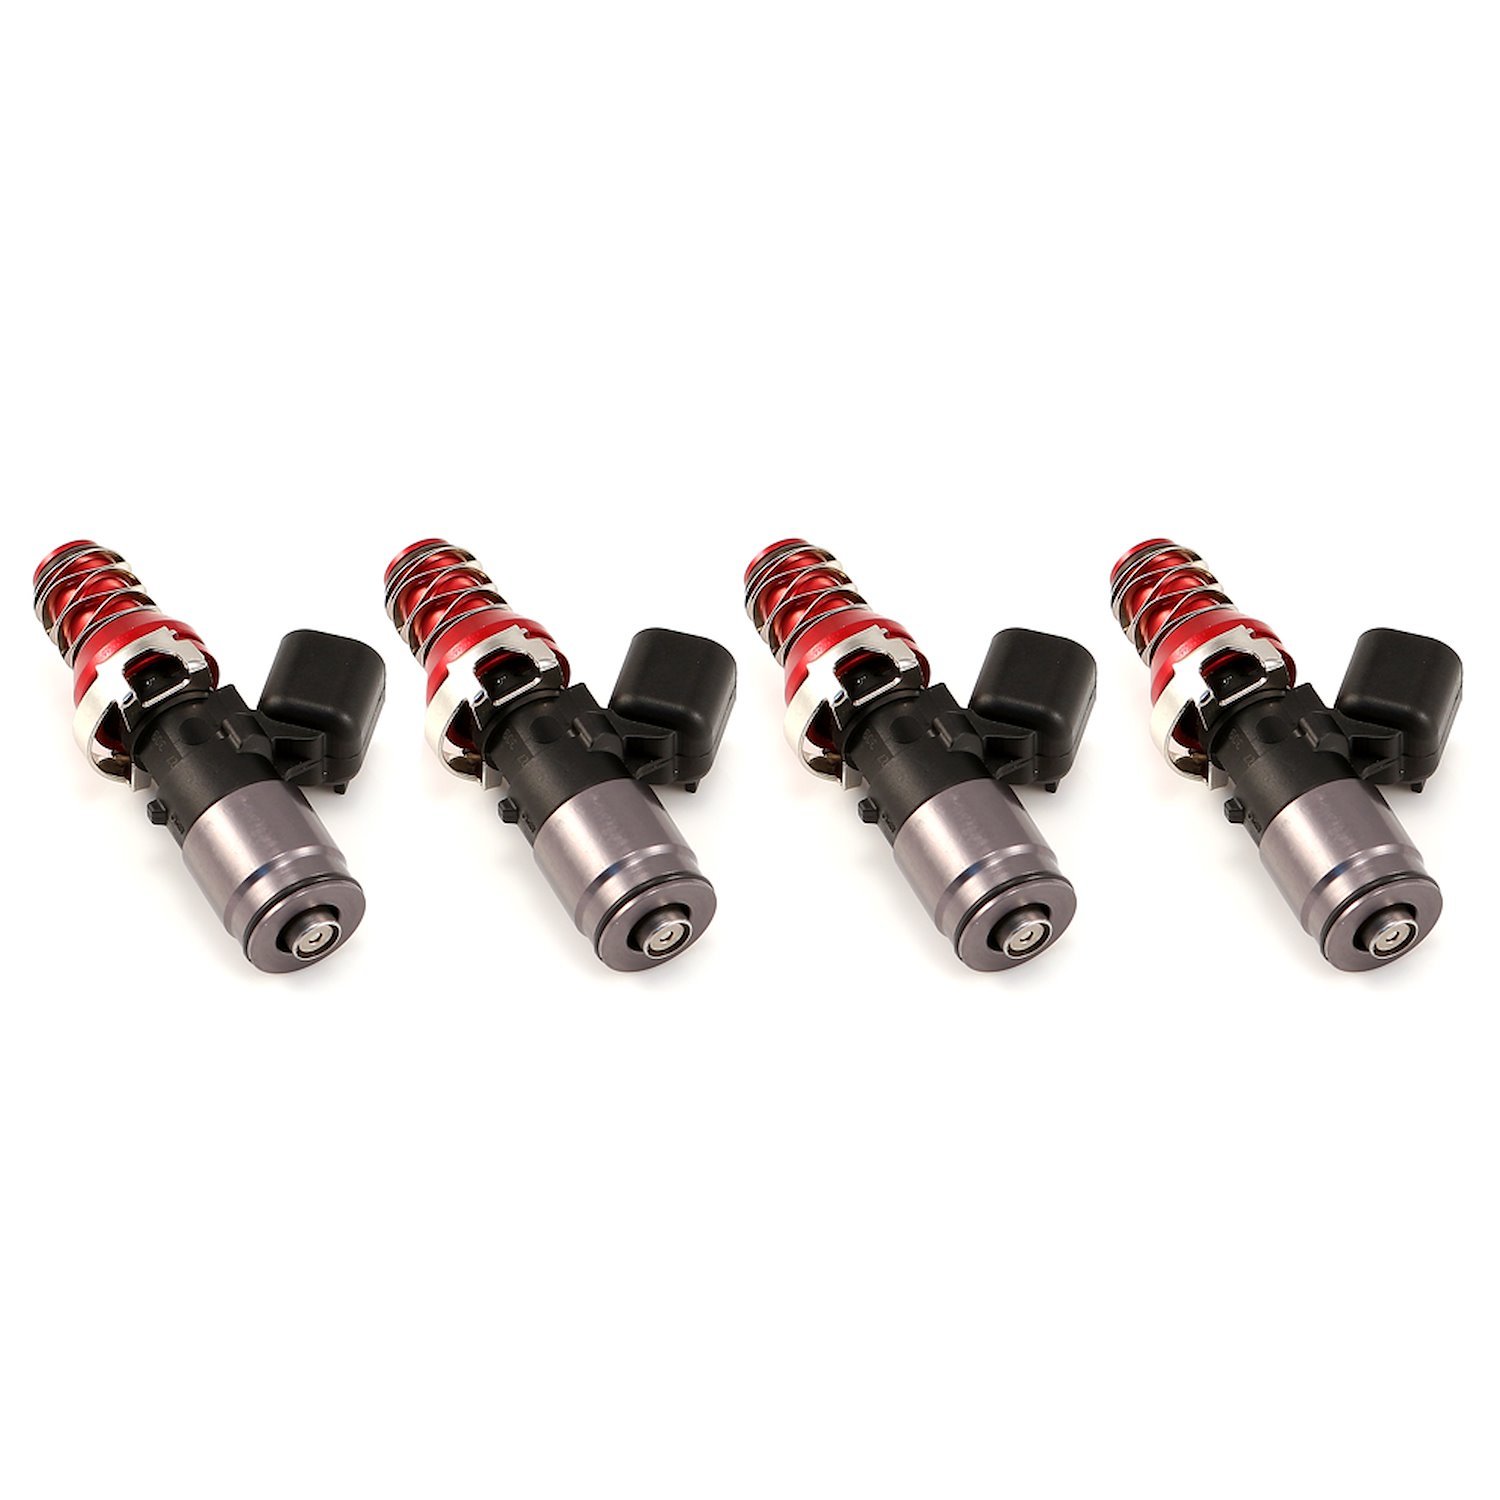 1050.48.11.WRX.4 1050cc Fuel Injector Set, WRX-16B Bottom Adaptors, 11 mm (Red) Adaptors